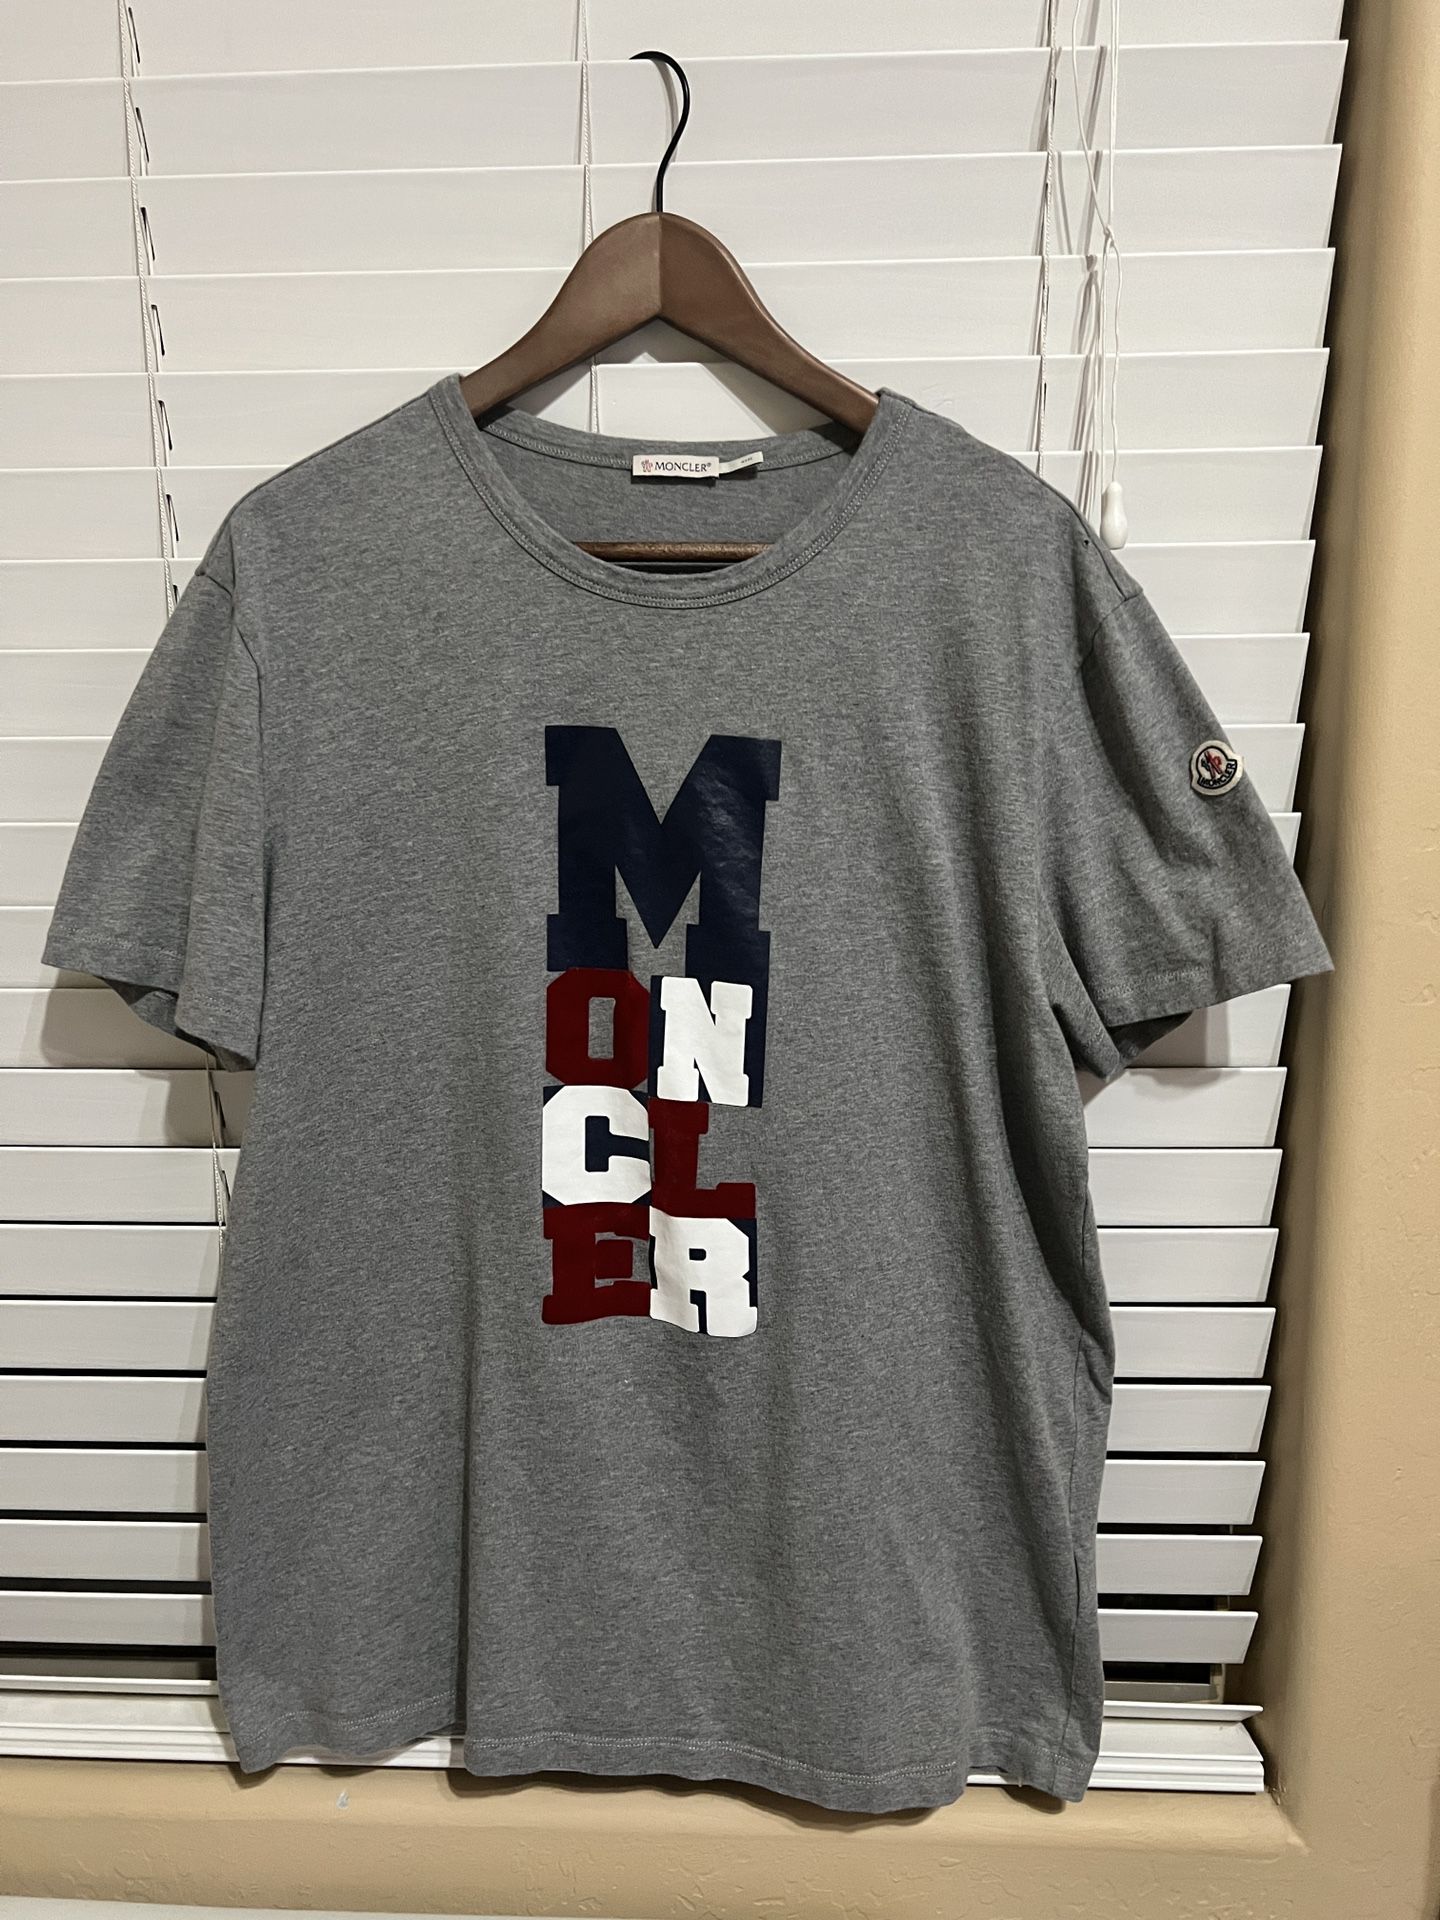 Moncler T-shirt / XL / Regular Size /Mens